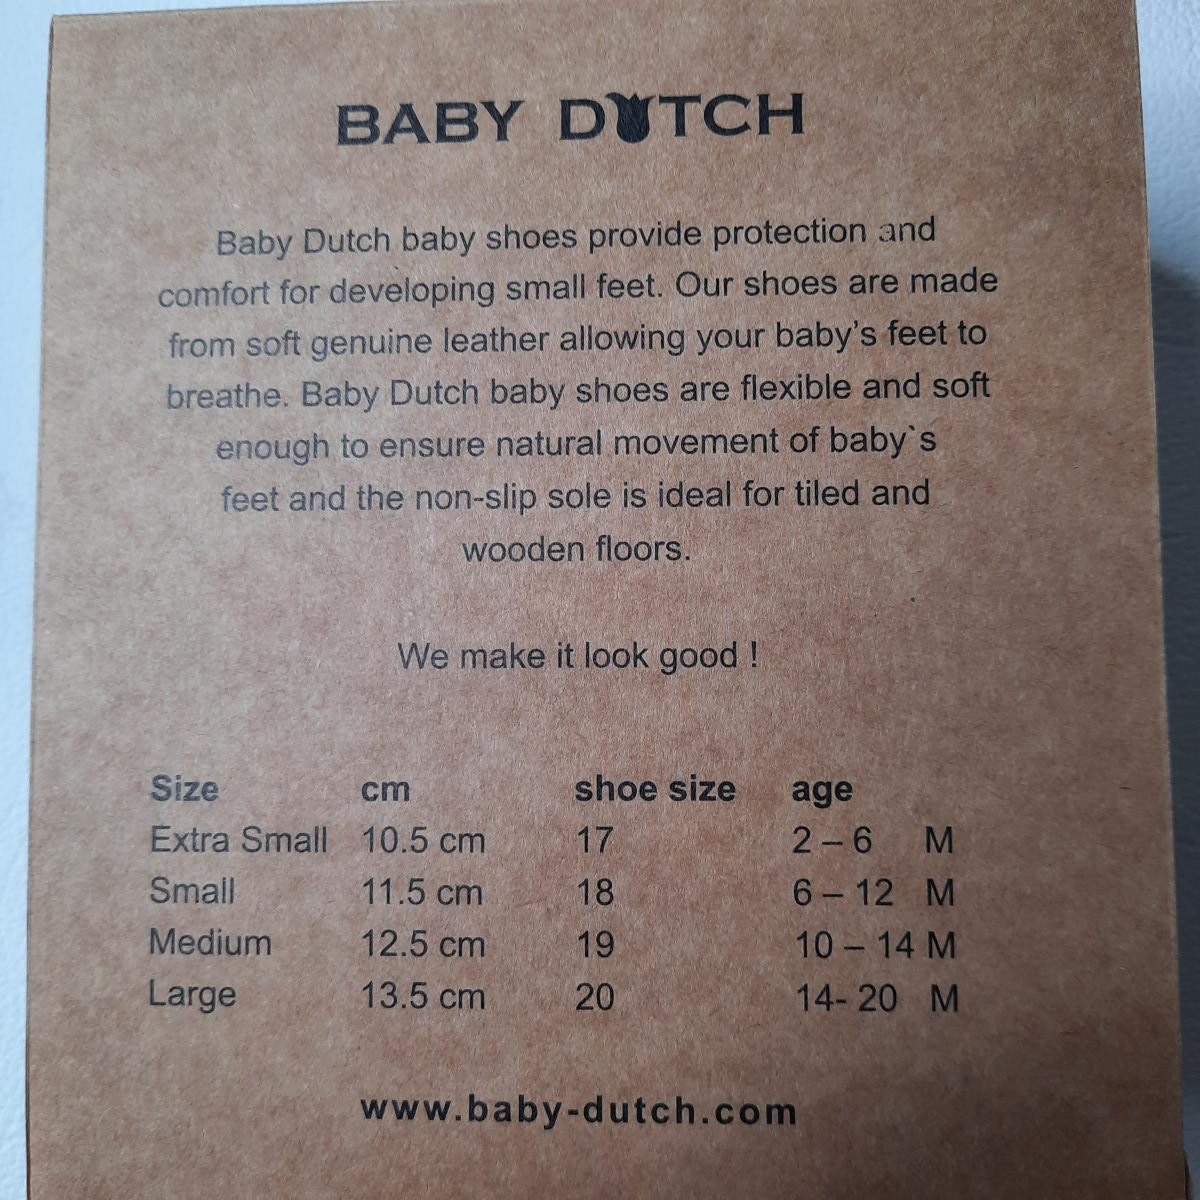 Chaussons en cuir Baby Dutch - Fushia star - Taille L - photo 7